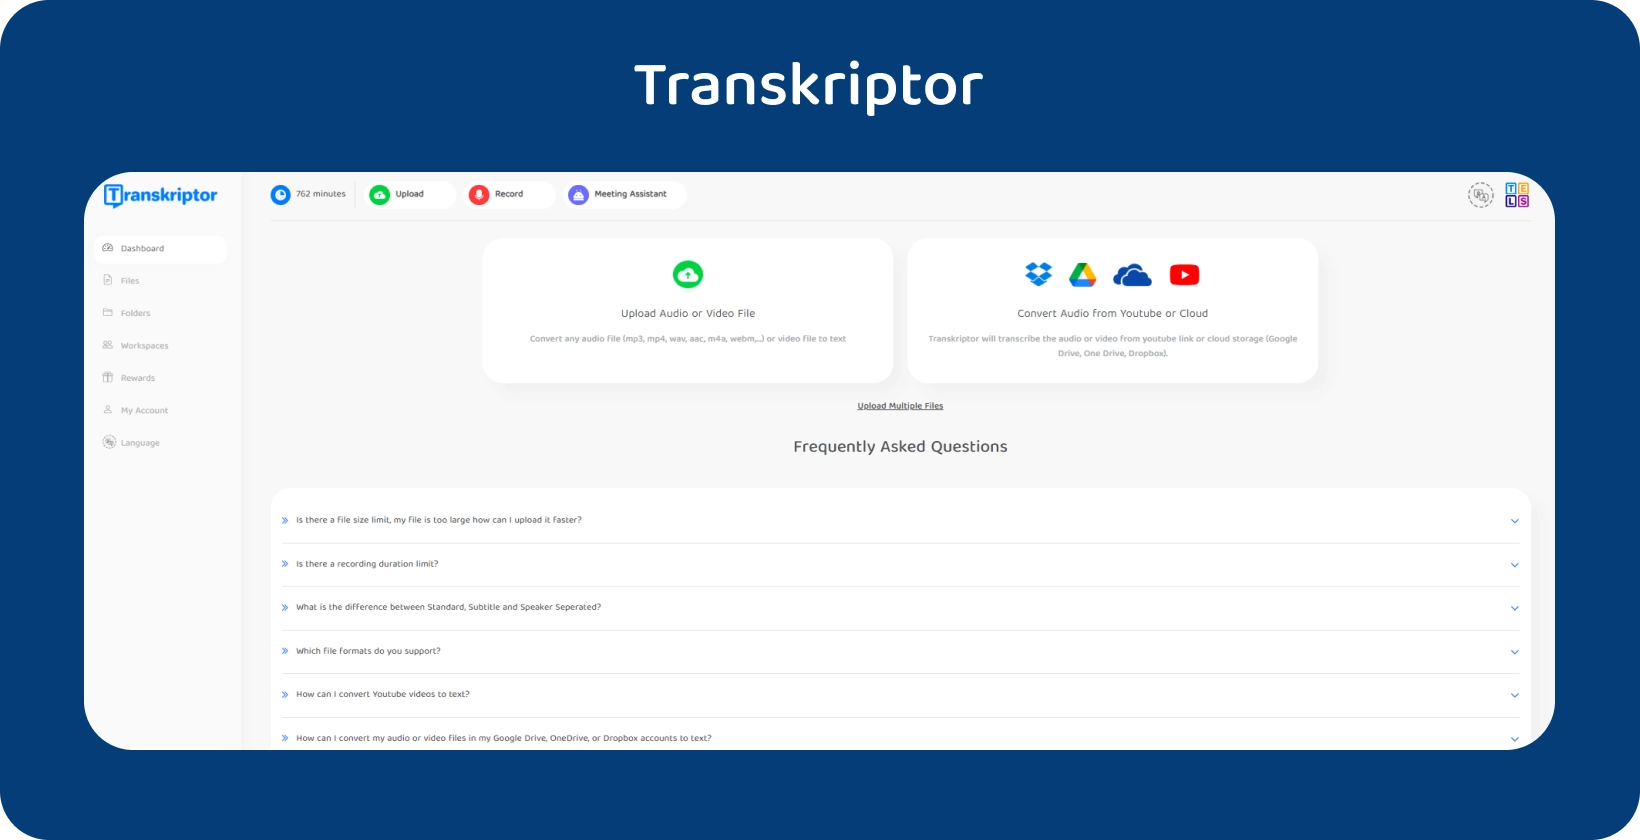 La interfaz de Transkriptor promociona su servicio de conversión de audio a texto.